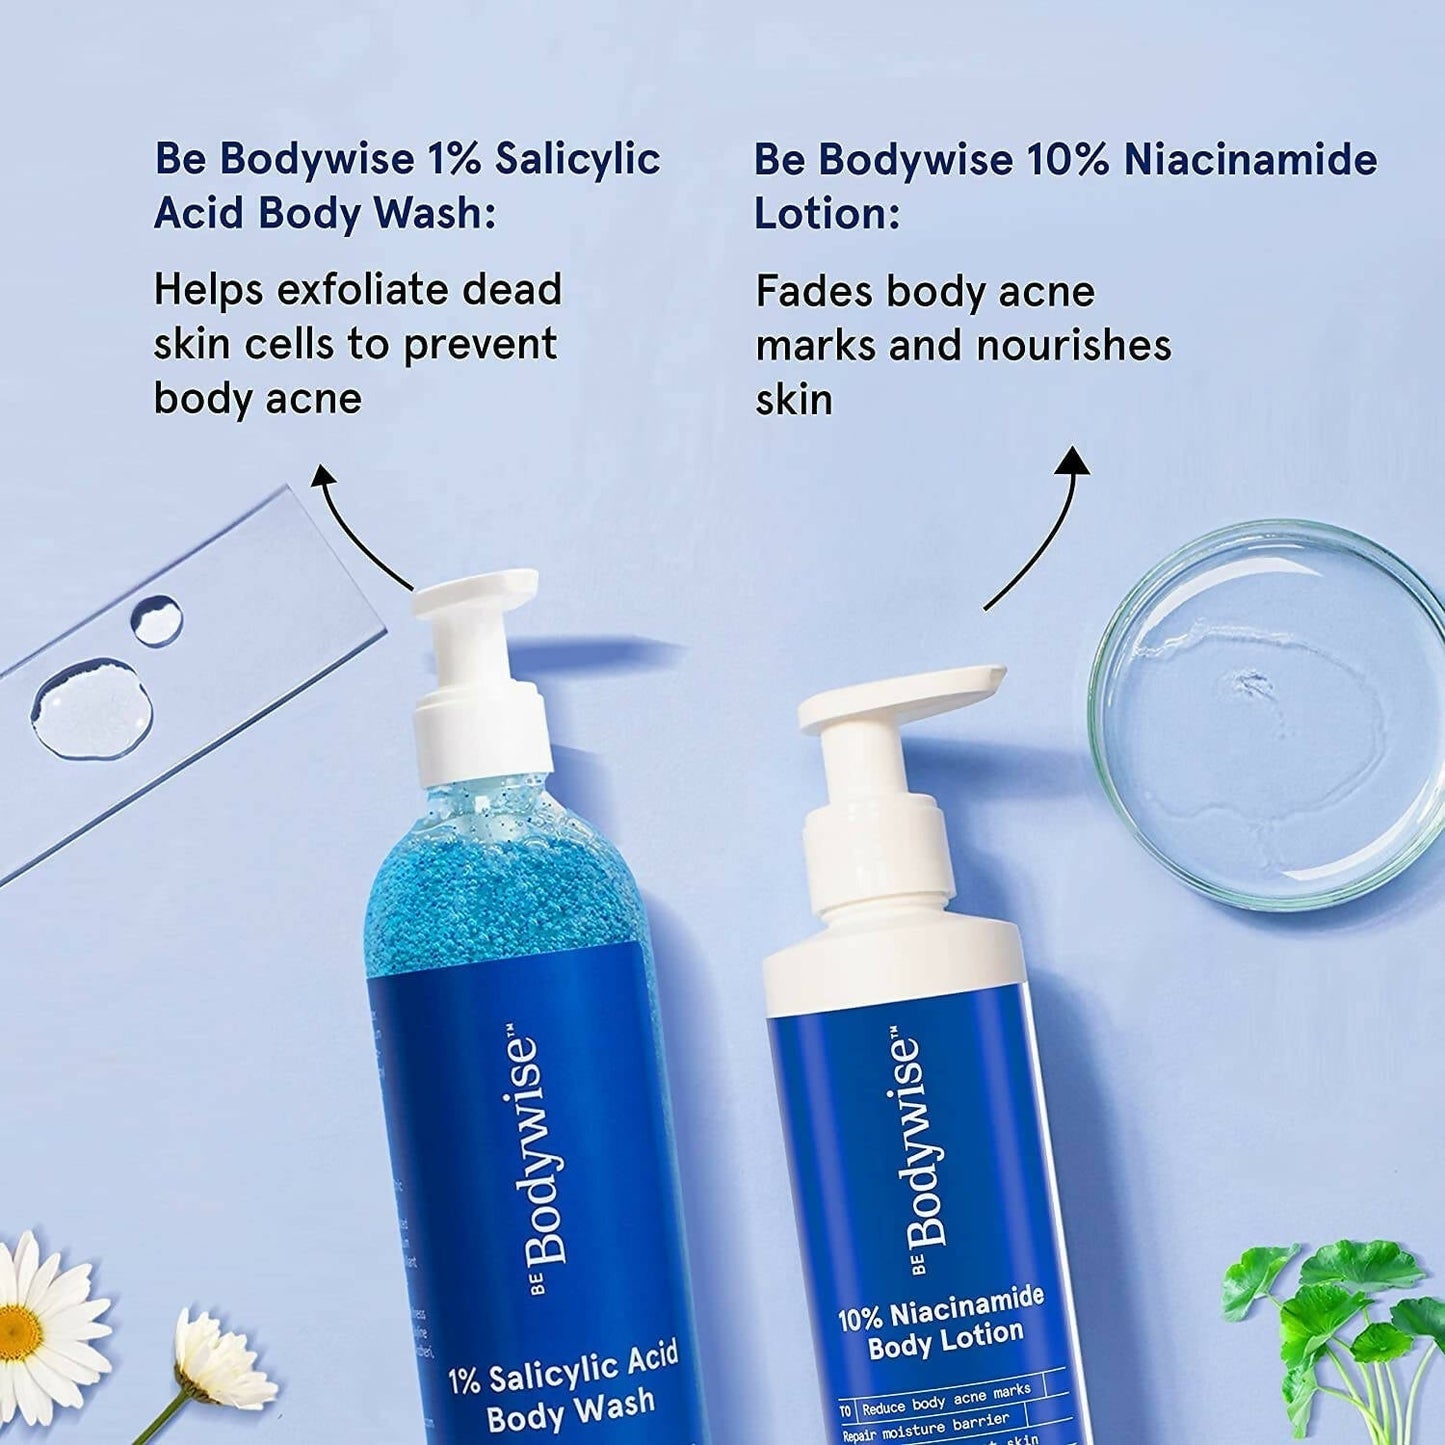 BeBodywise 1% Salicylic Acid Body Wash and 10% Niacinamide Body Lotion